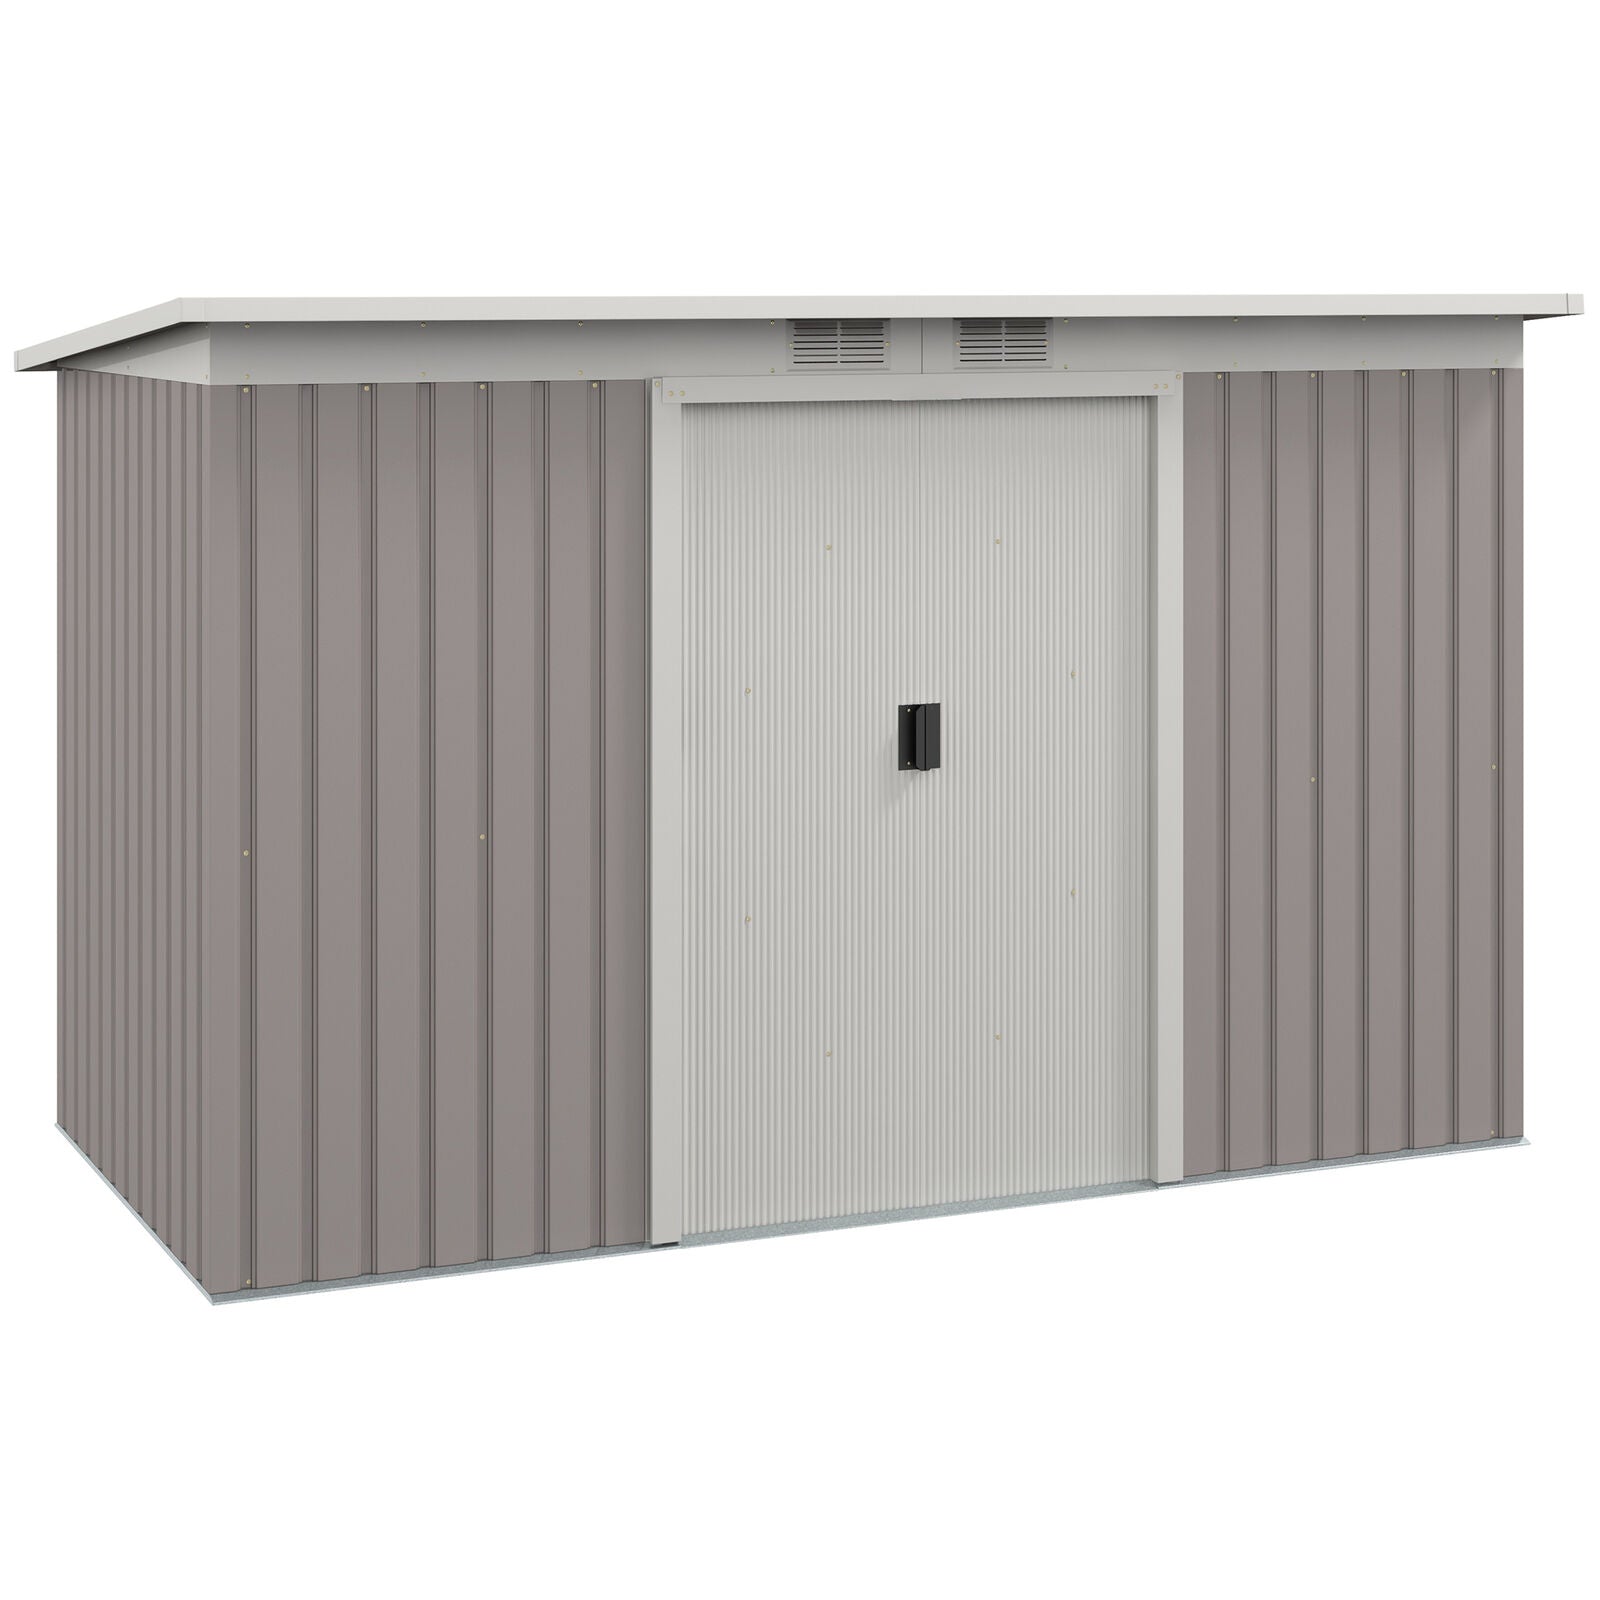 9 x 4FT Outdoor Metal Frame Garden Storage Shed w/ 2 Door, Light Grey